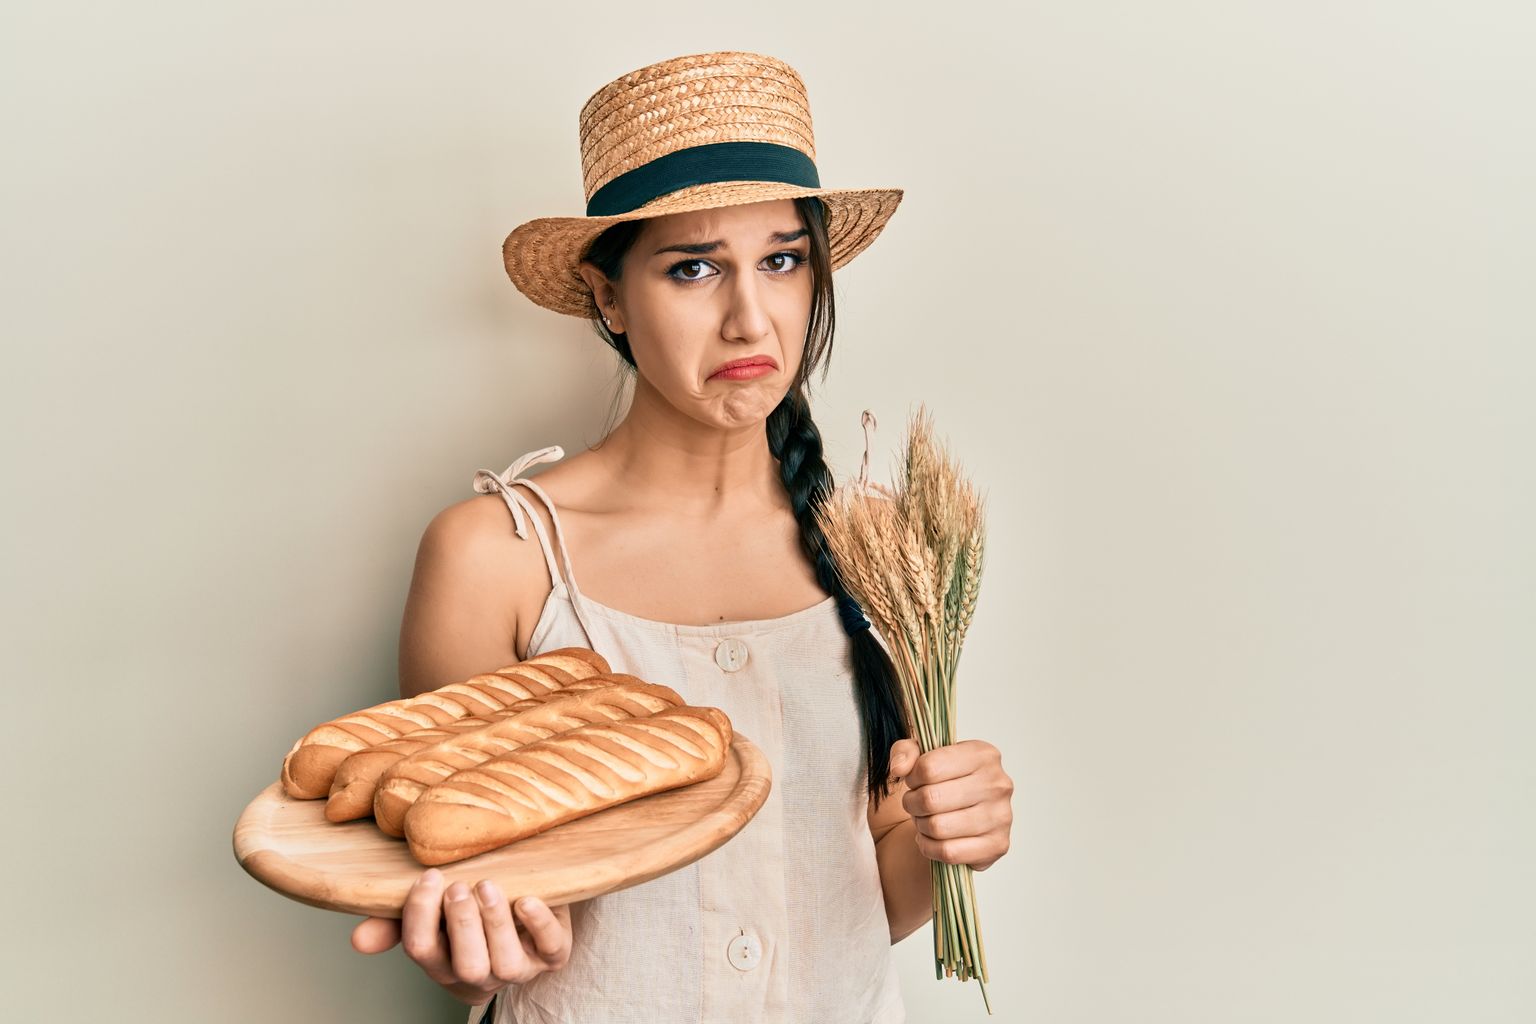 Хлеб и выпечка тоже вызывают депрессию. Иллюстративное фото